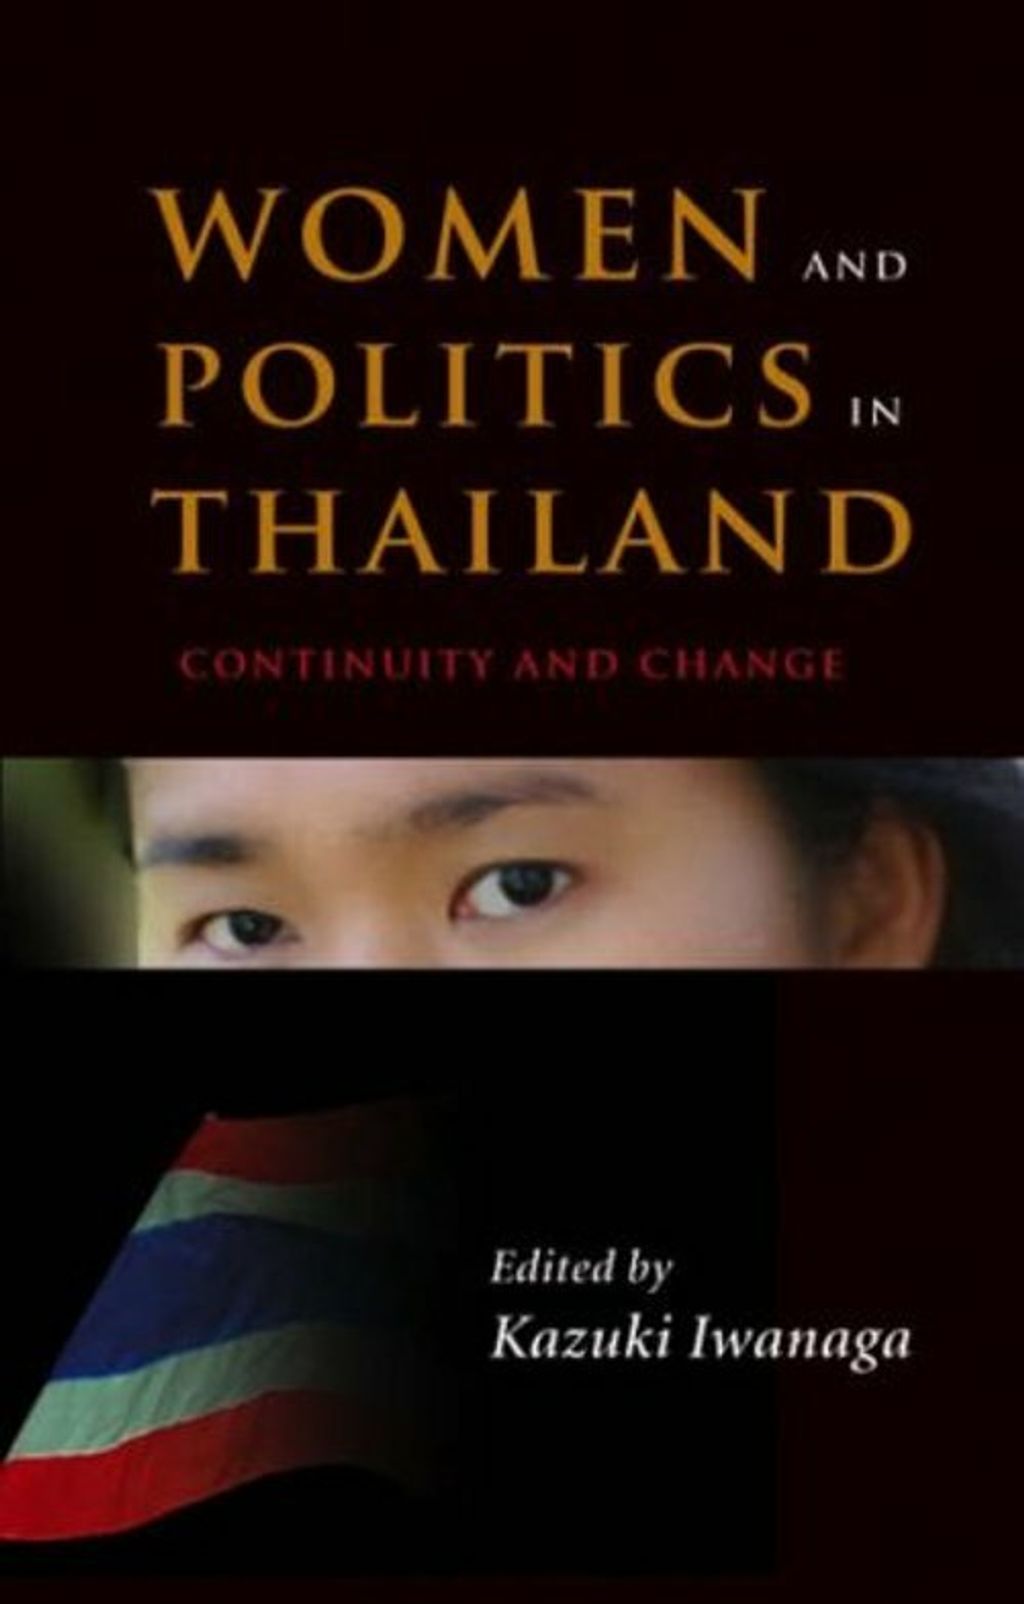 women and politics in thailand.jpg